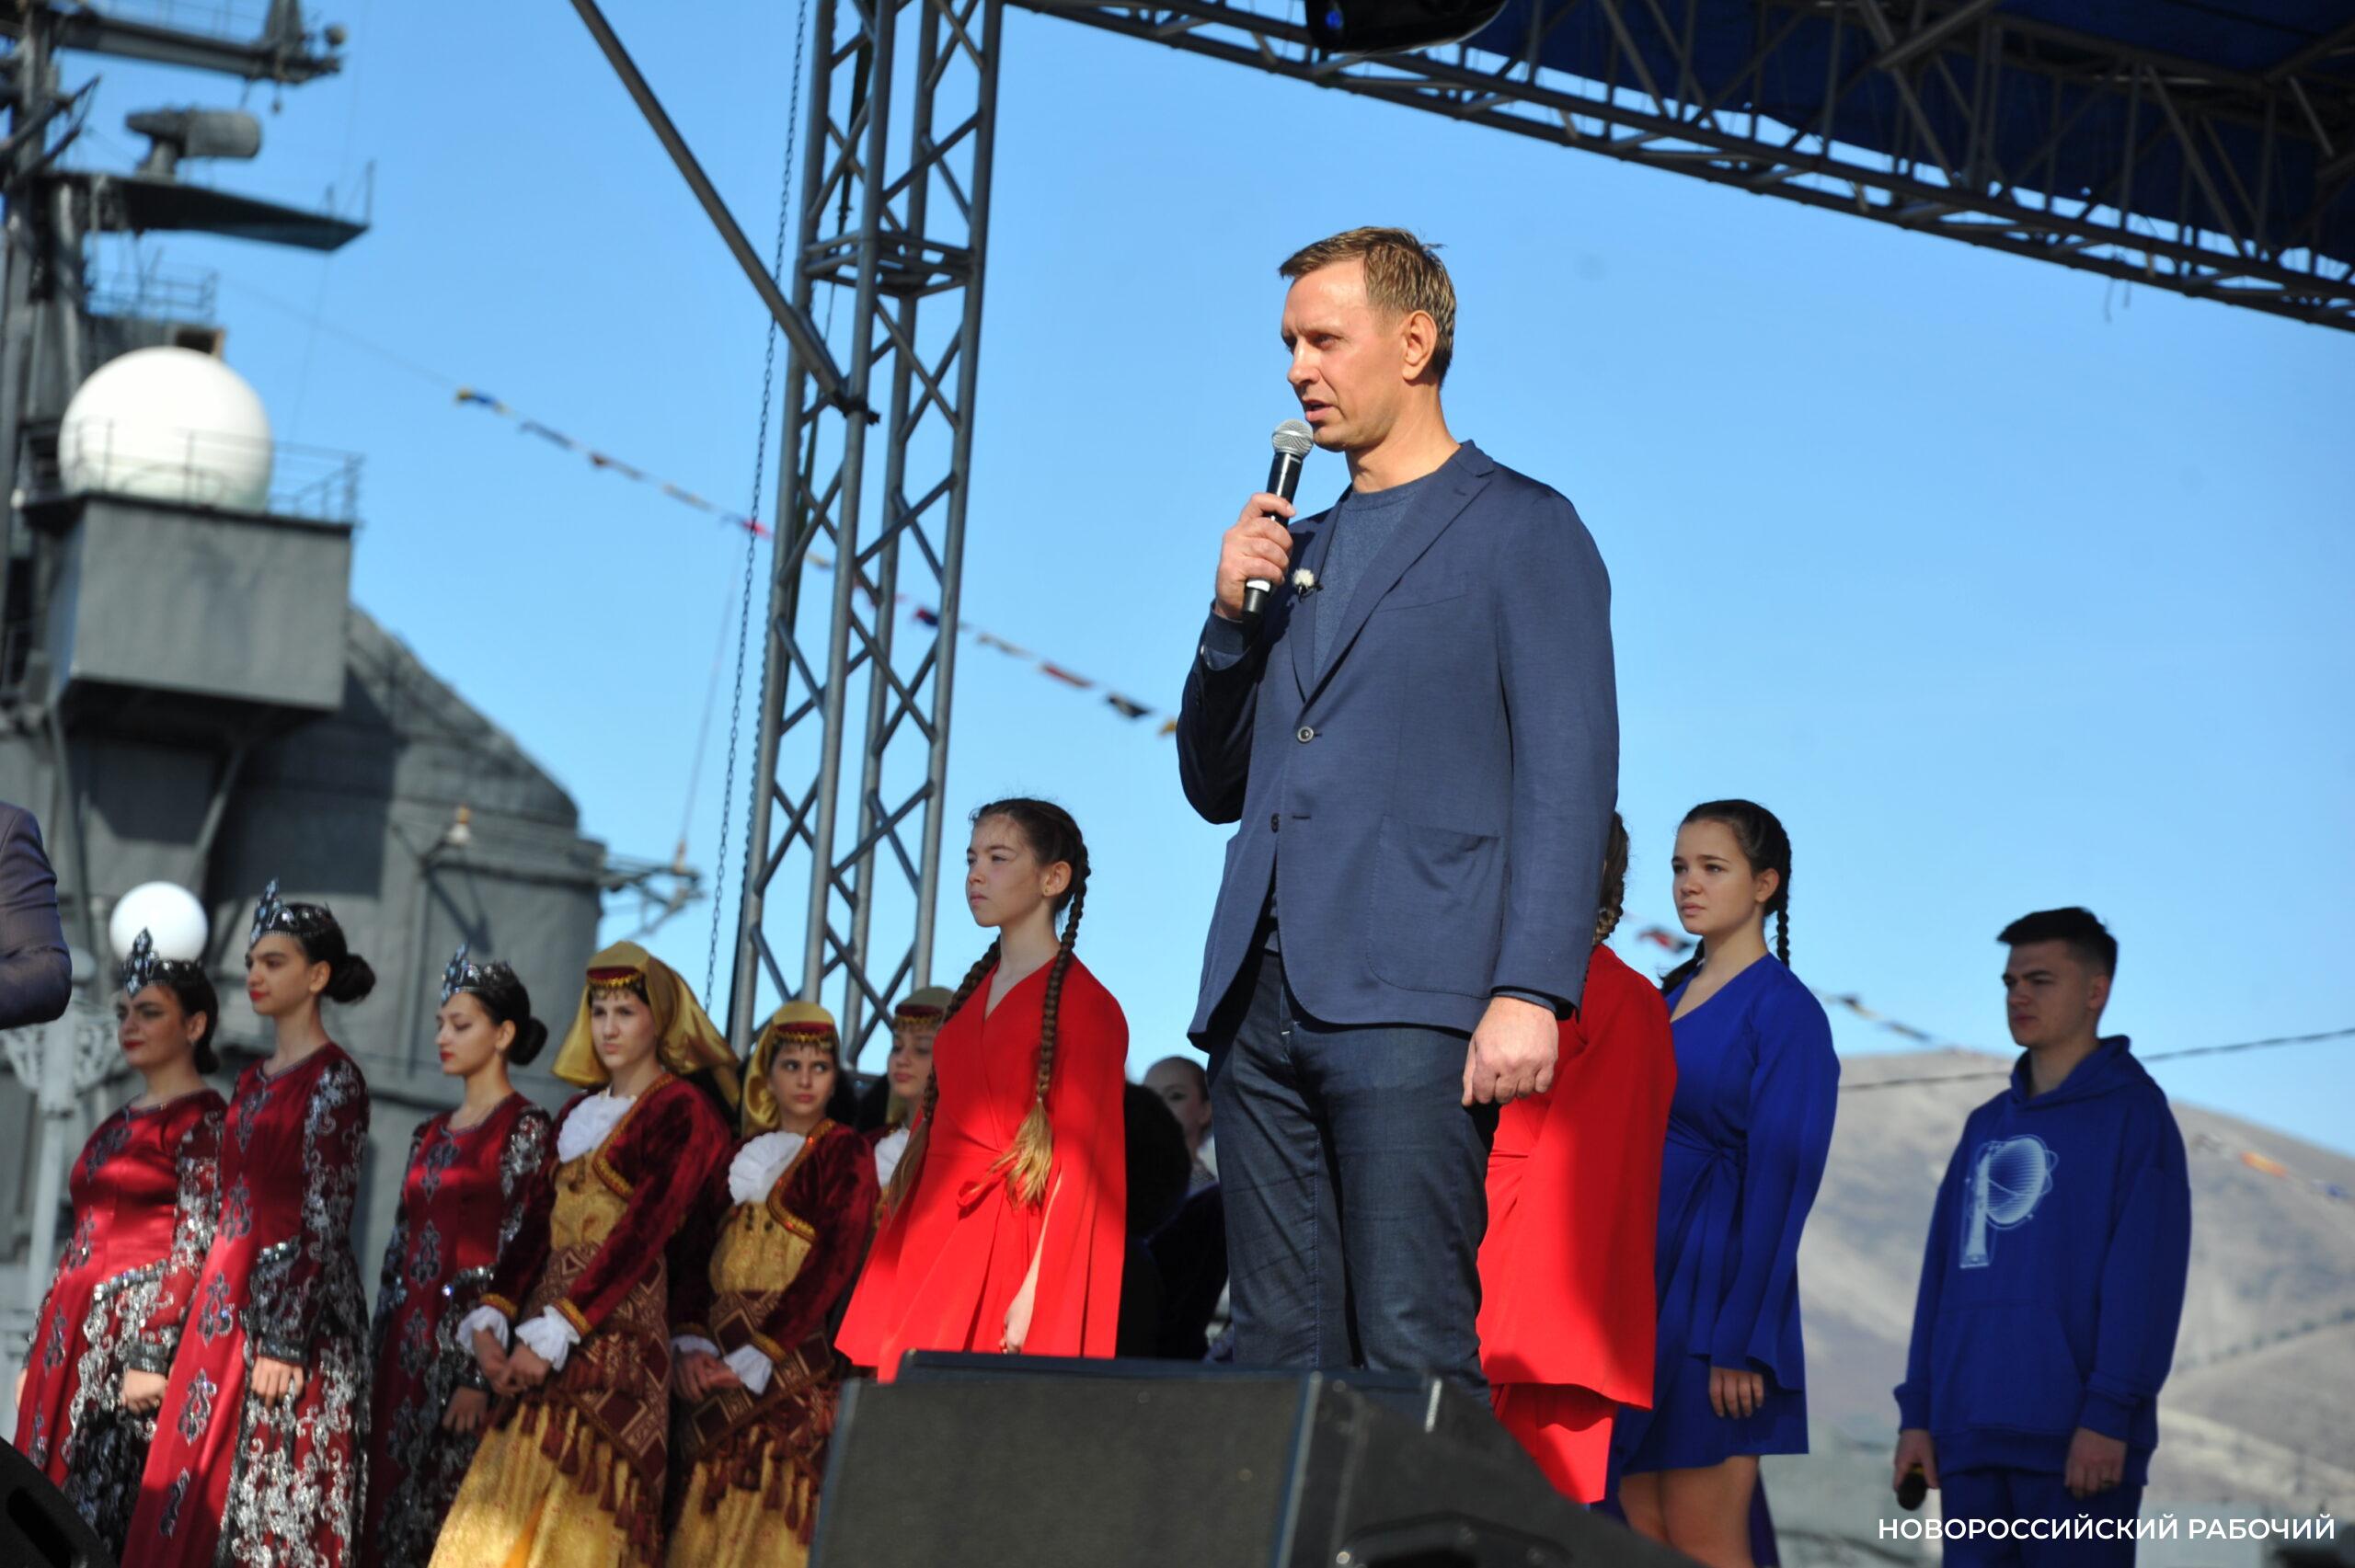 Глава Новороссийска исполнил гимн России с праздничной сцены на Форумной площади